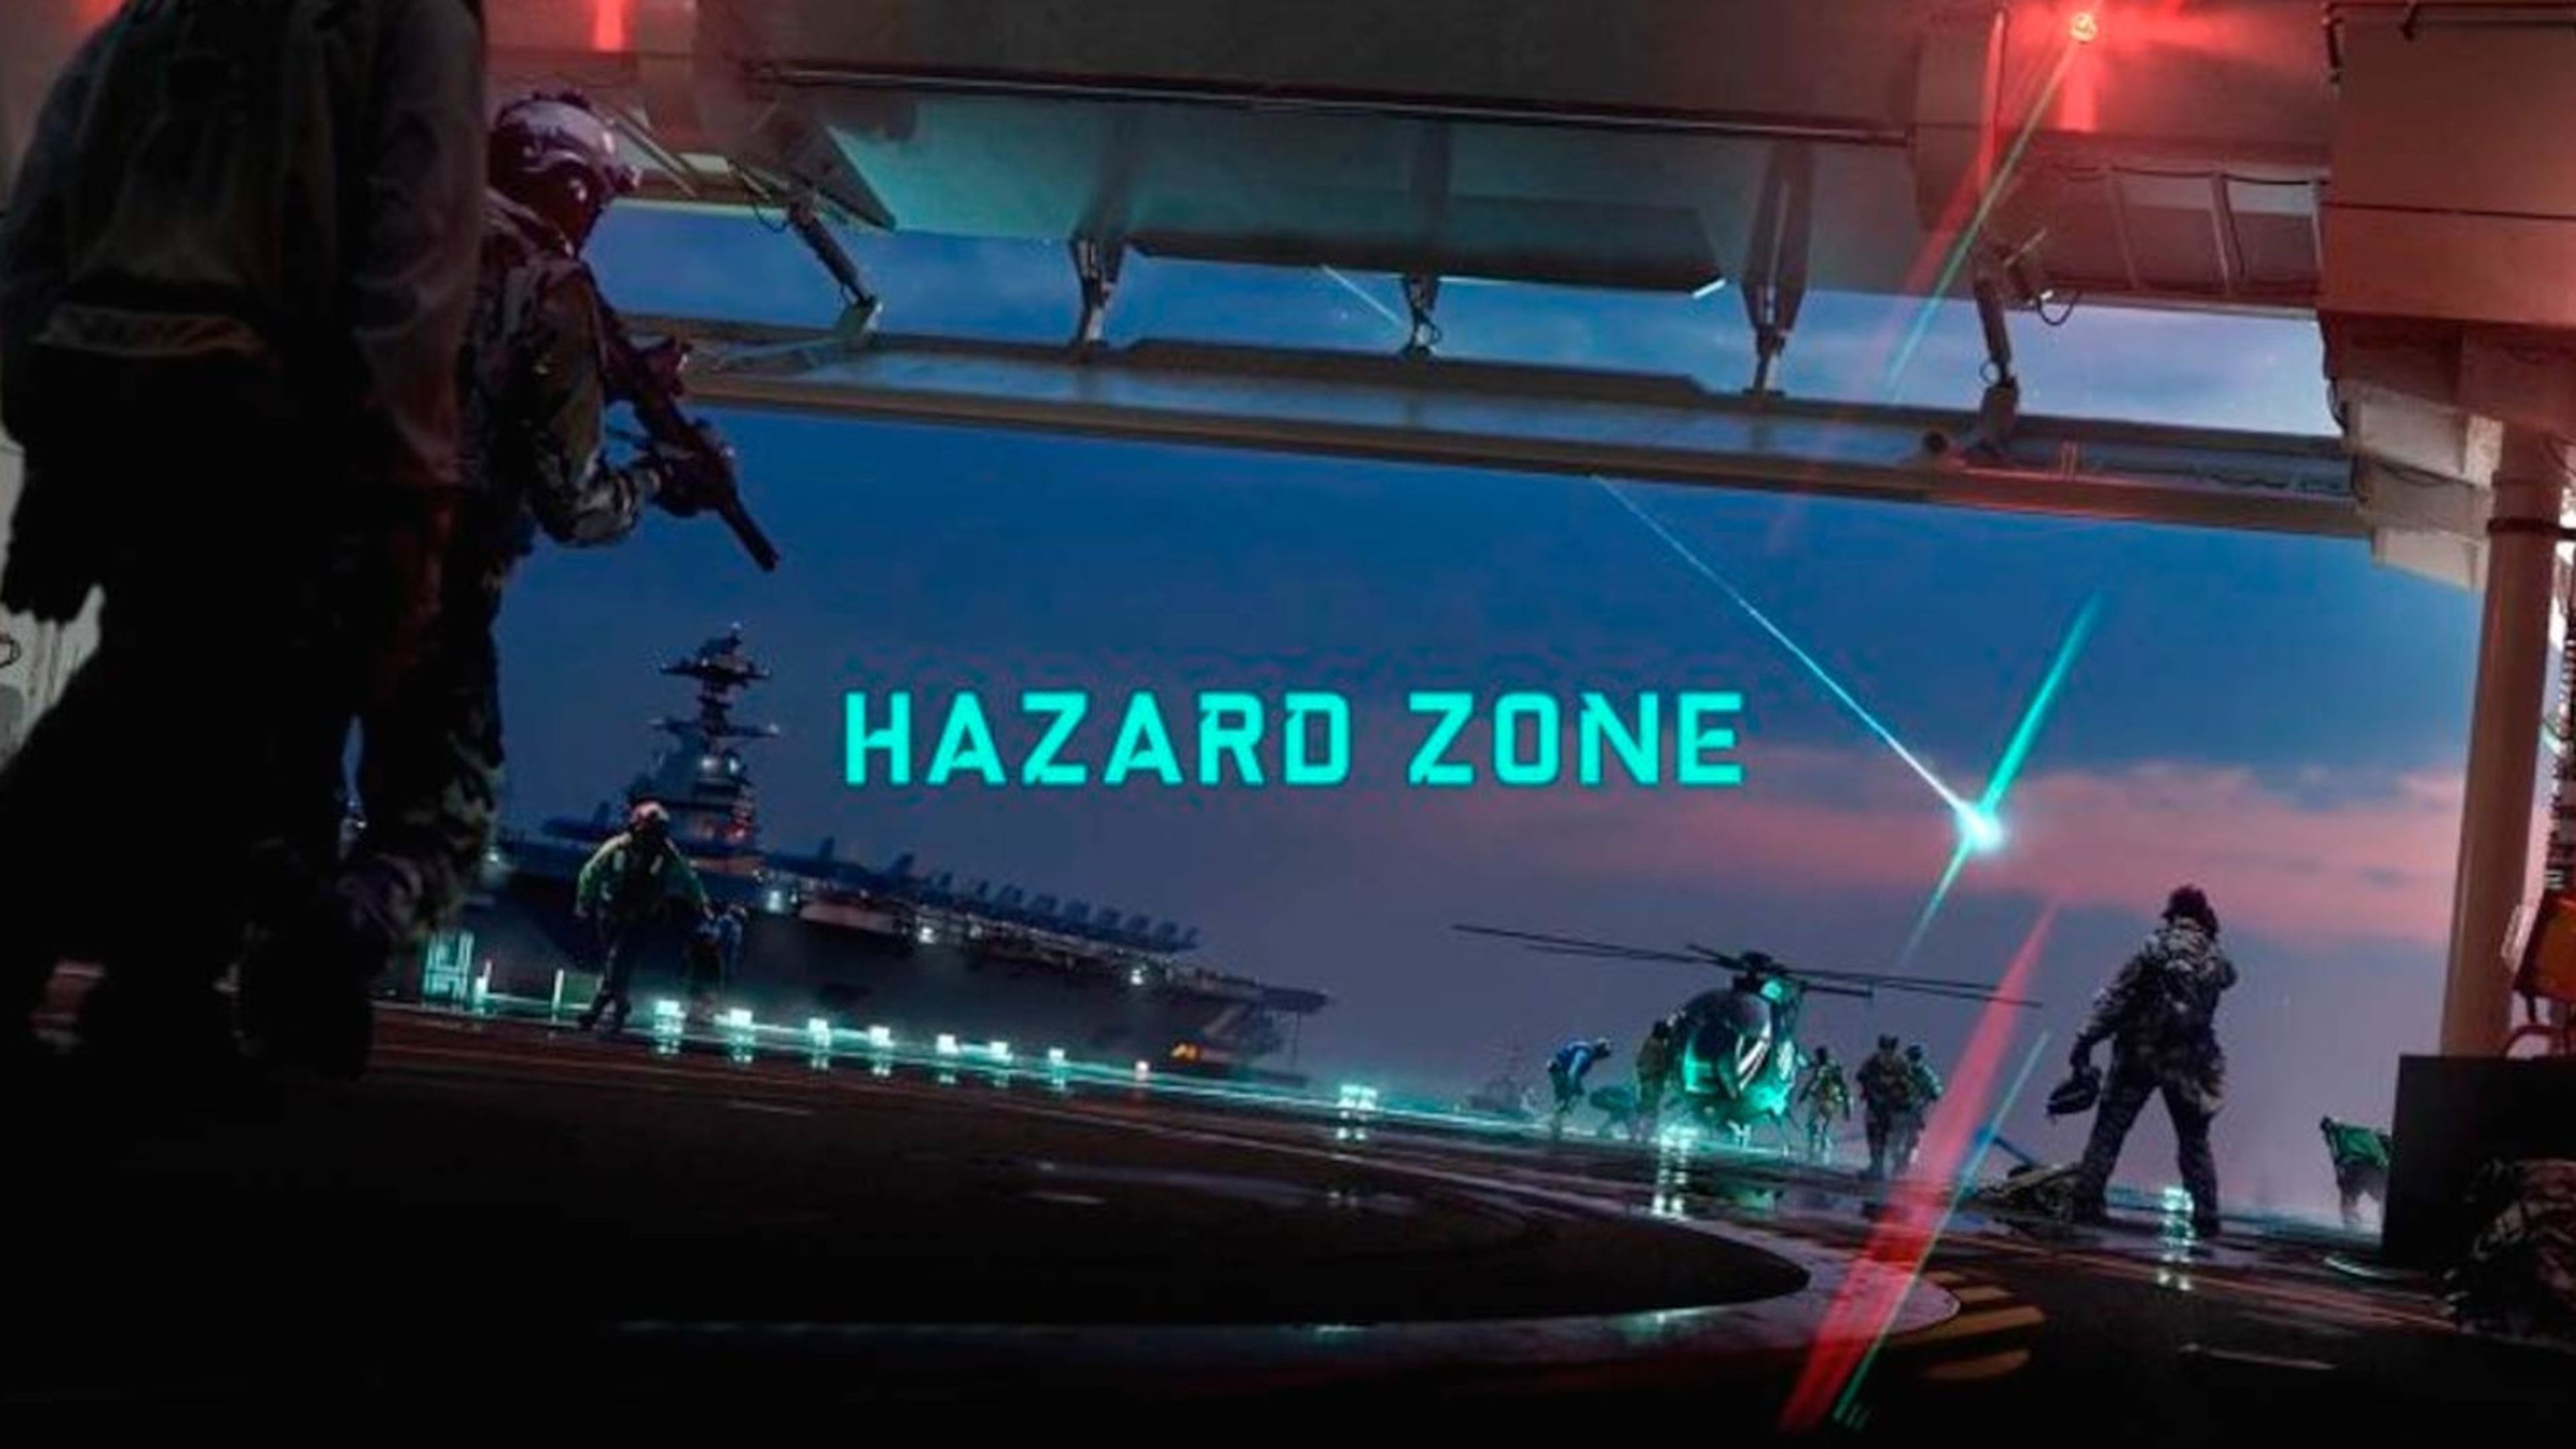 Battlefield 2042 Hazard Zone